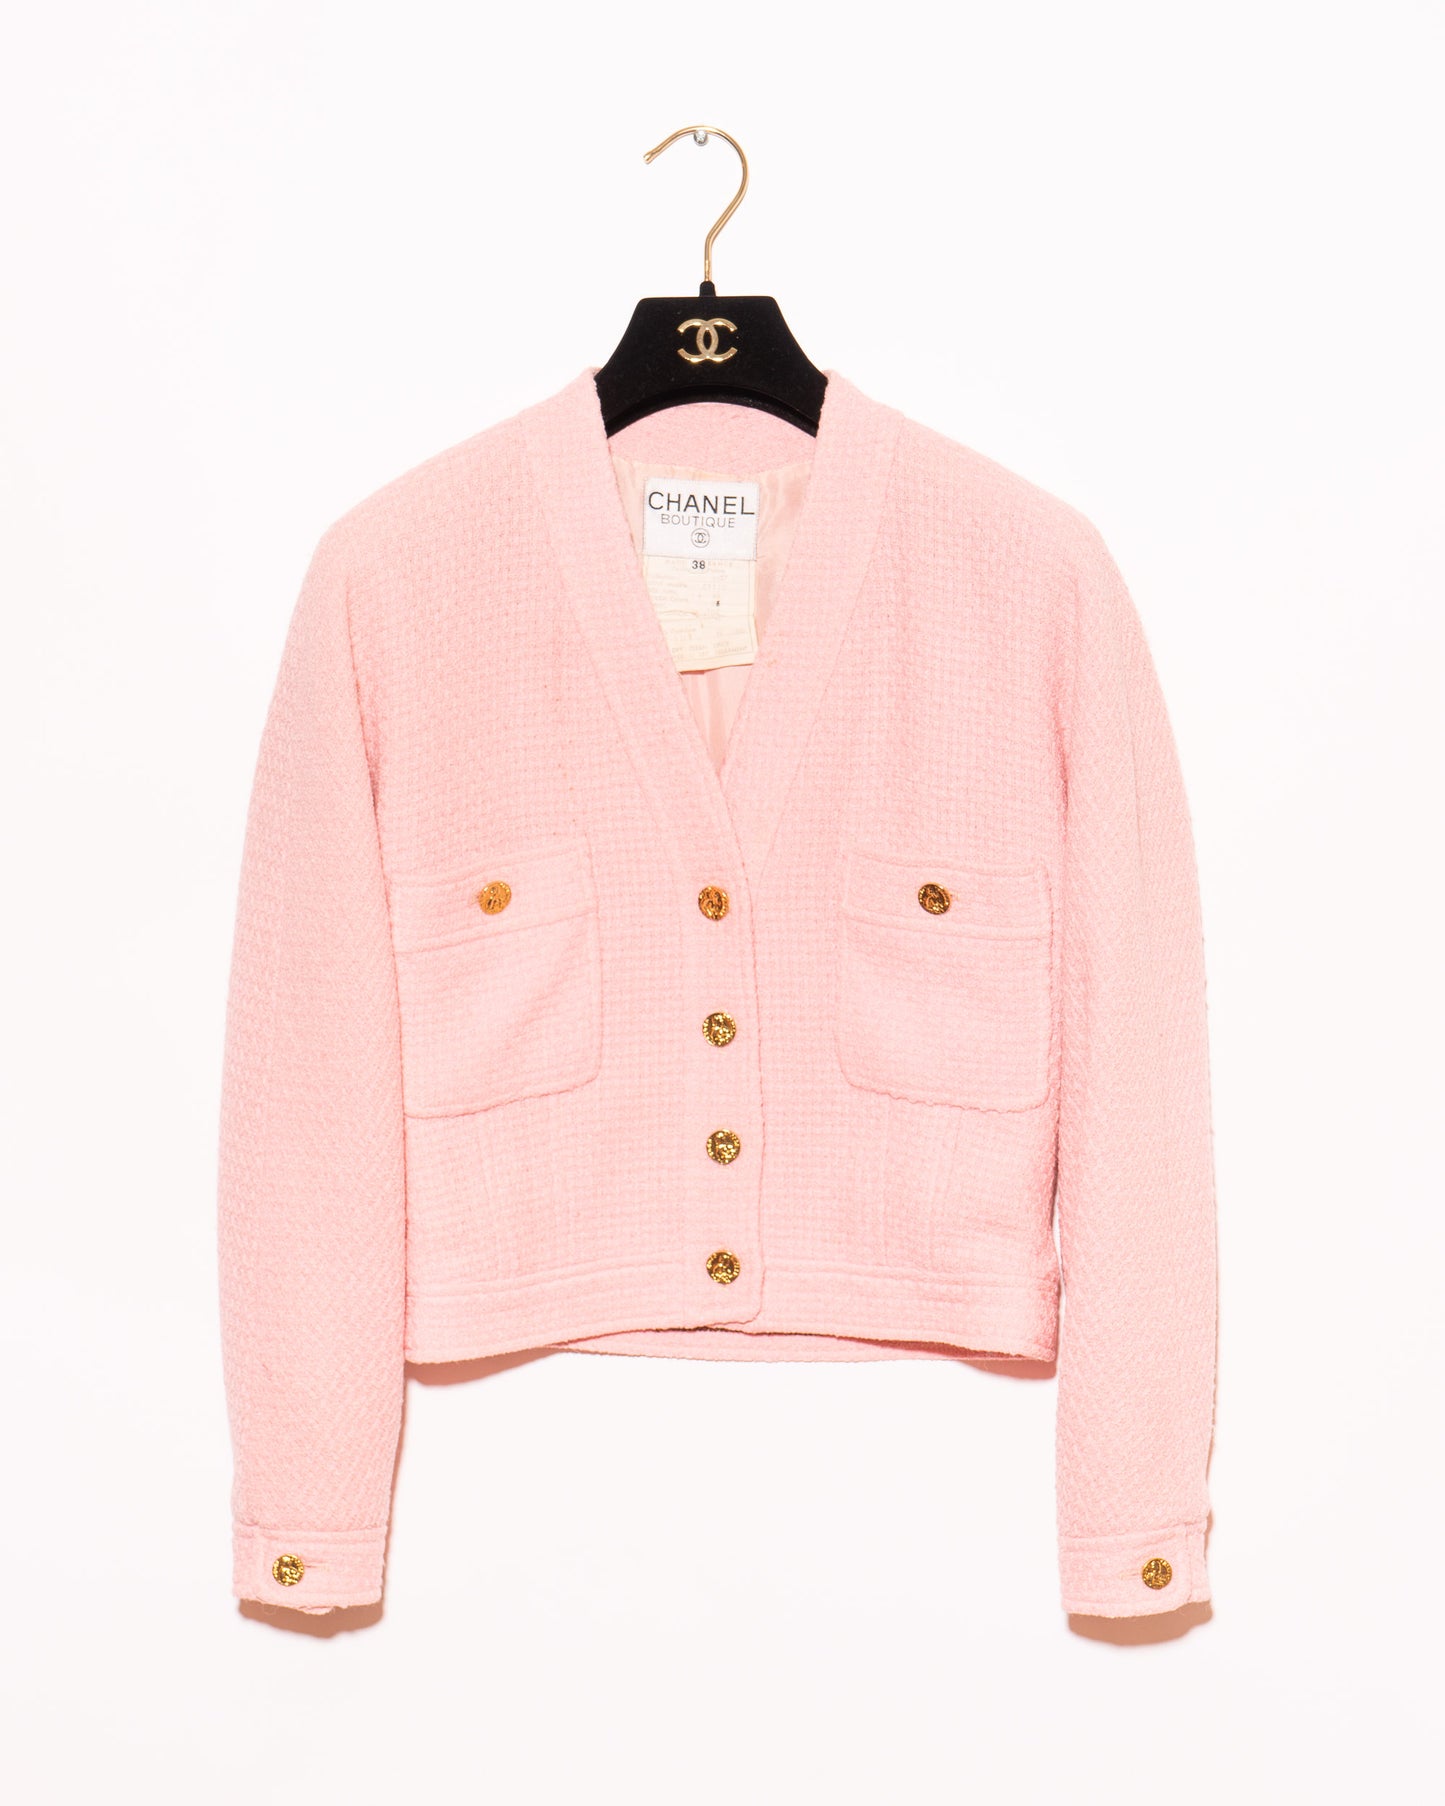 FR36-38 Rare Chanel Spring 1988 Collarless Two Pocket Pink Wool Tweed Jacket